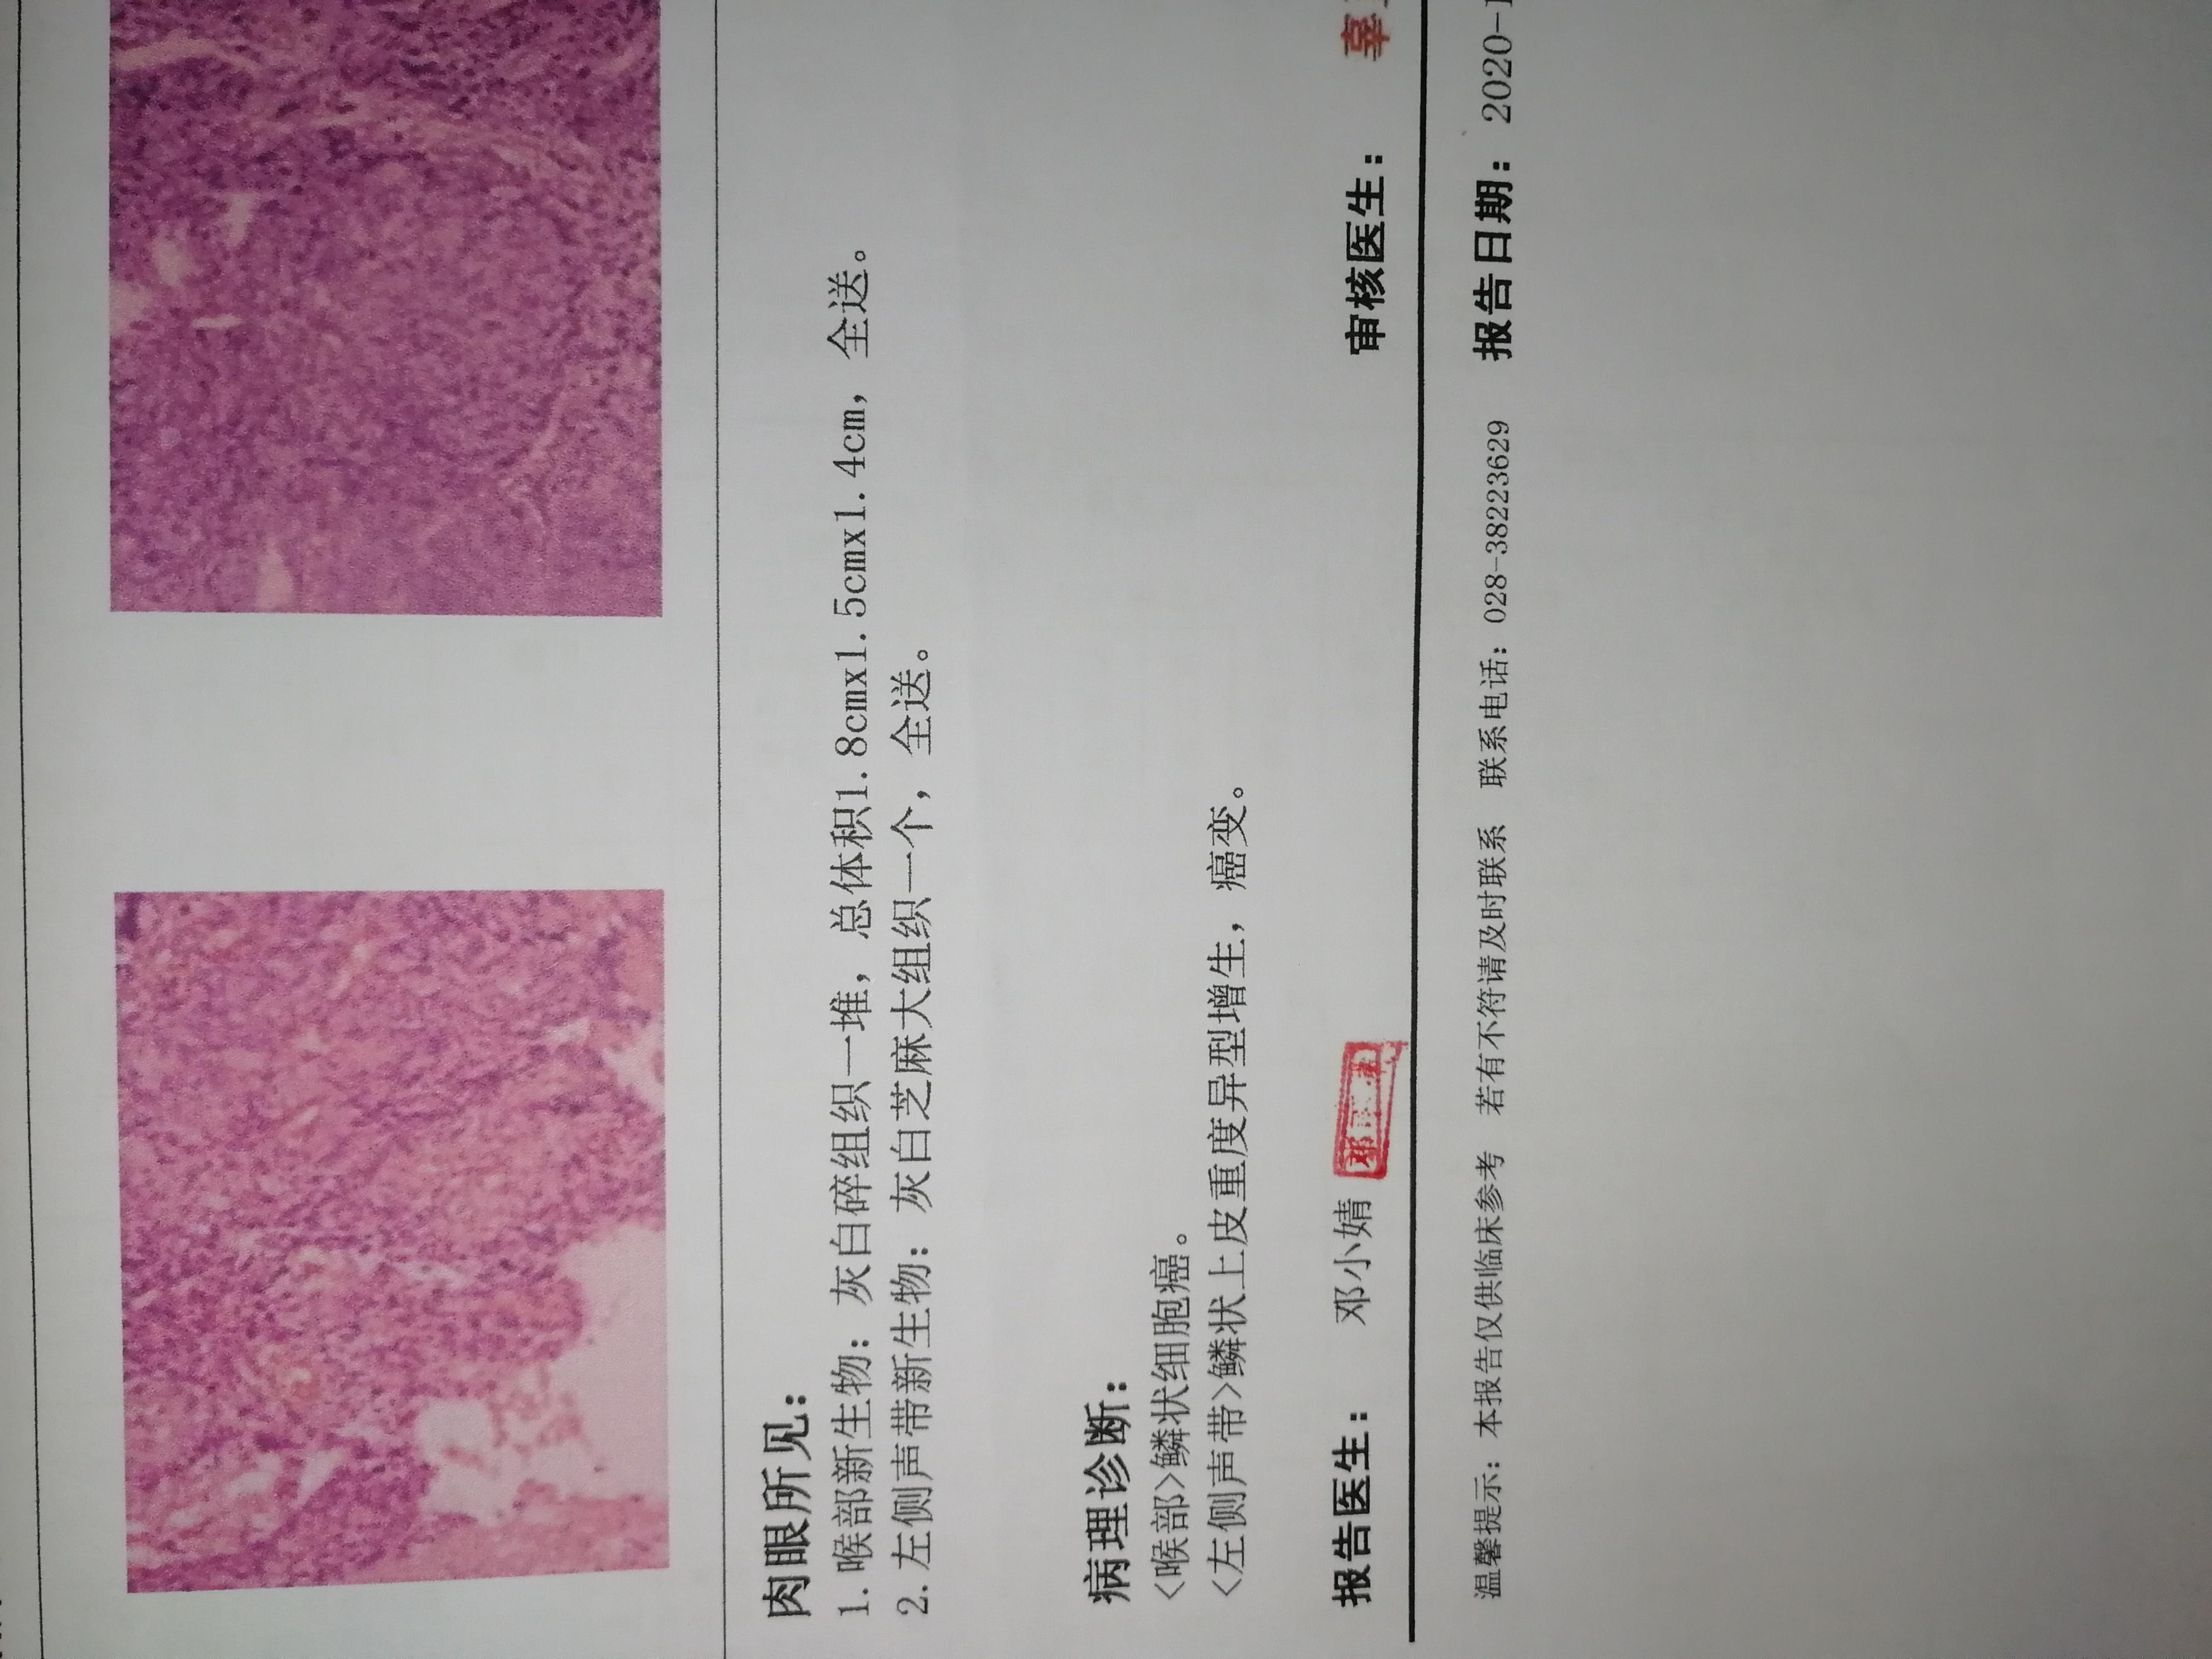 声门型喉癌1例-MedSci.cn